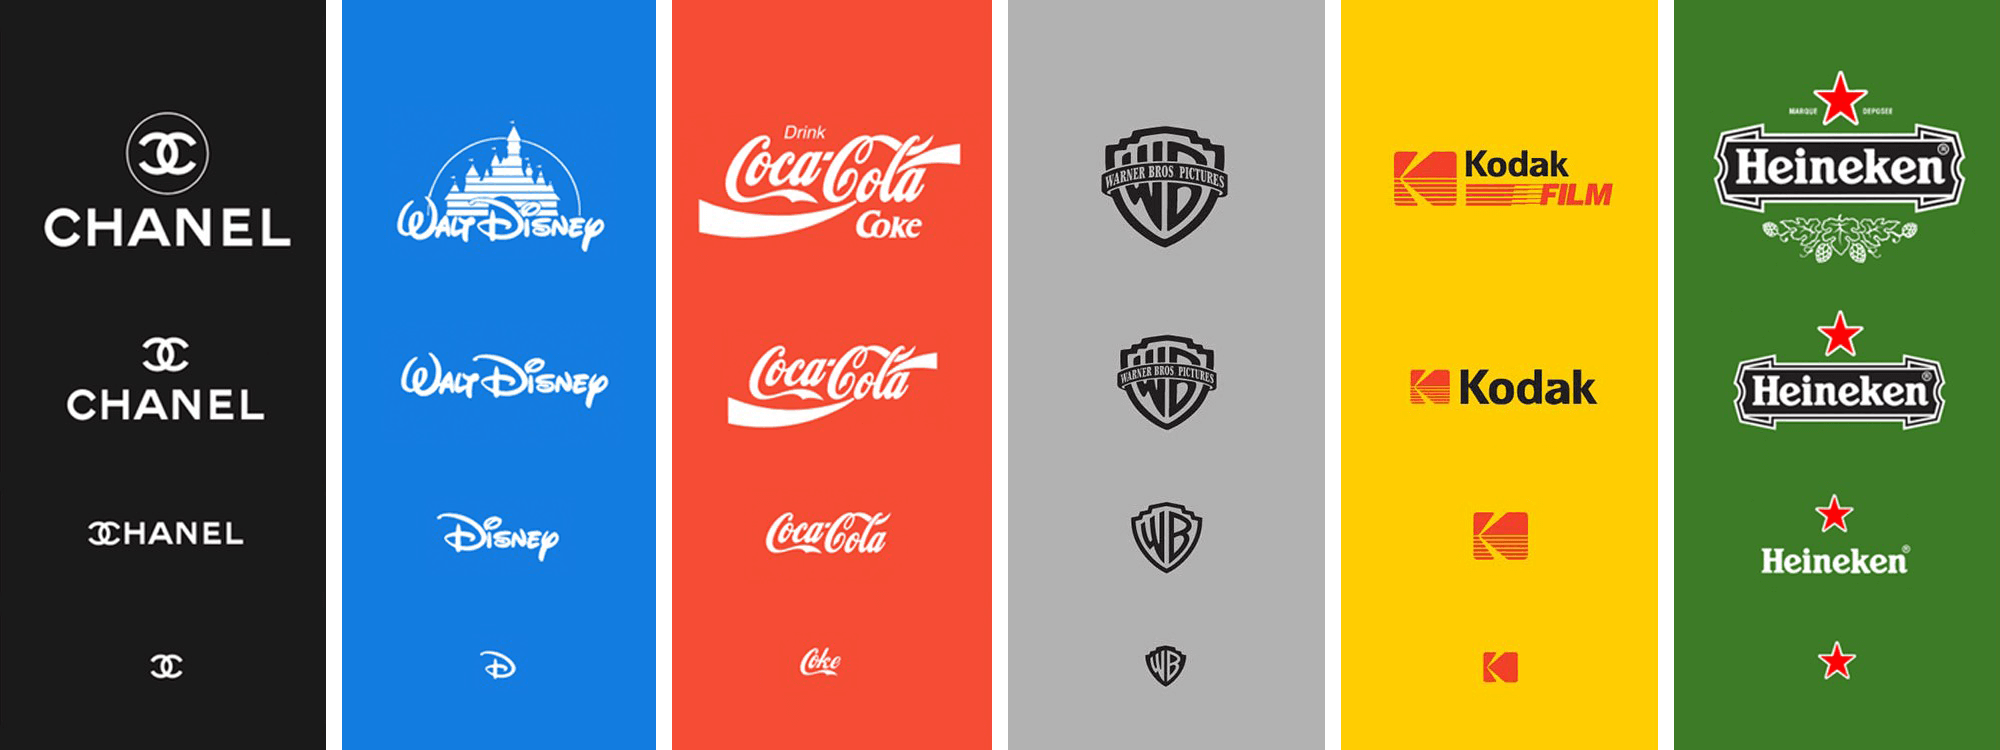 Responsive logo examples from Chanel, Disney, Coca Cola, Warner Bros., Kodak Film, and Heineken.